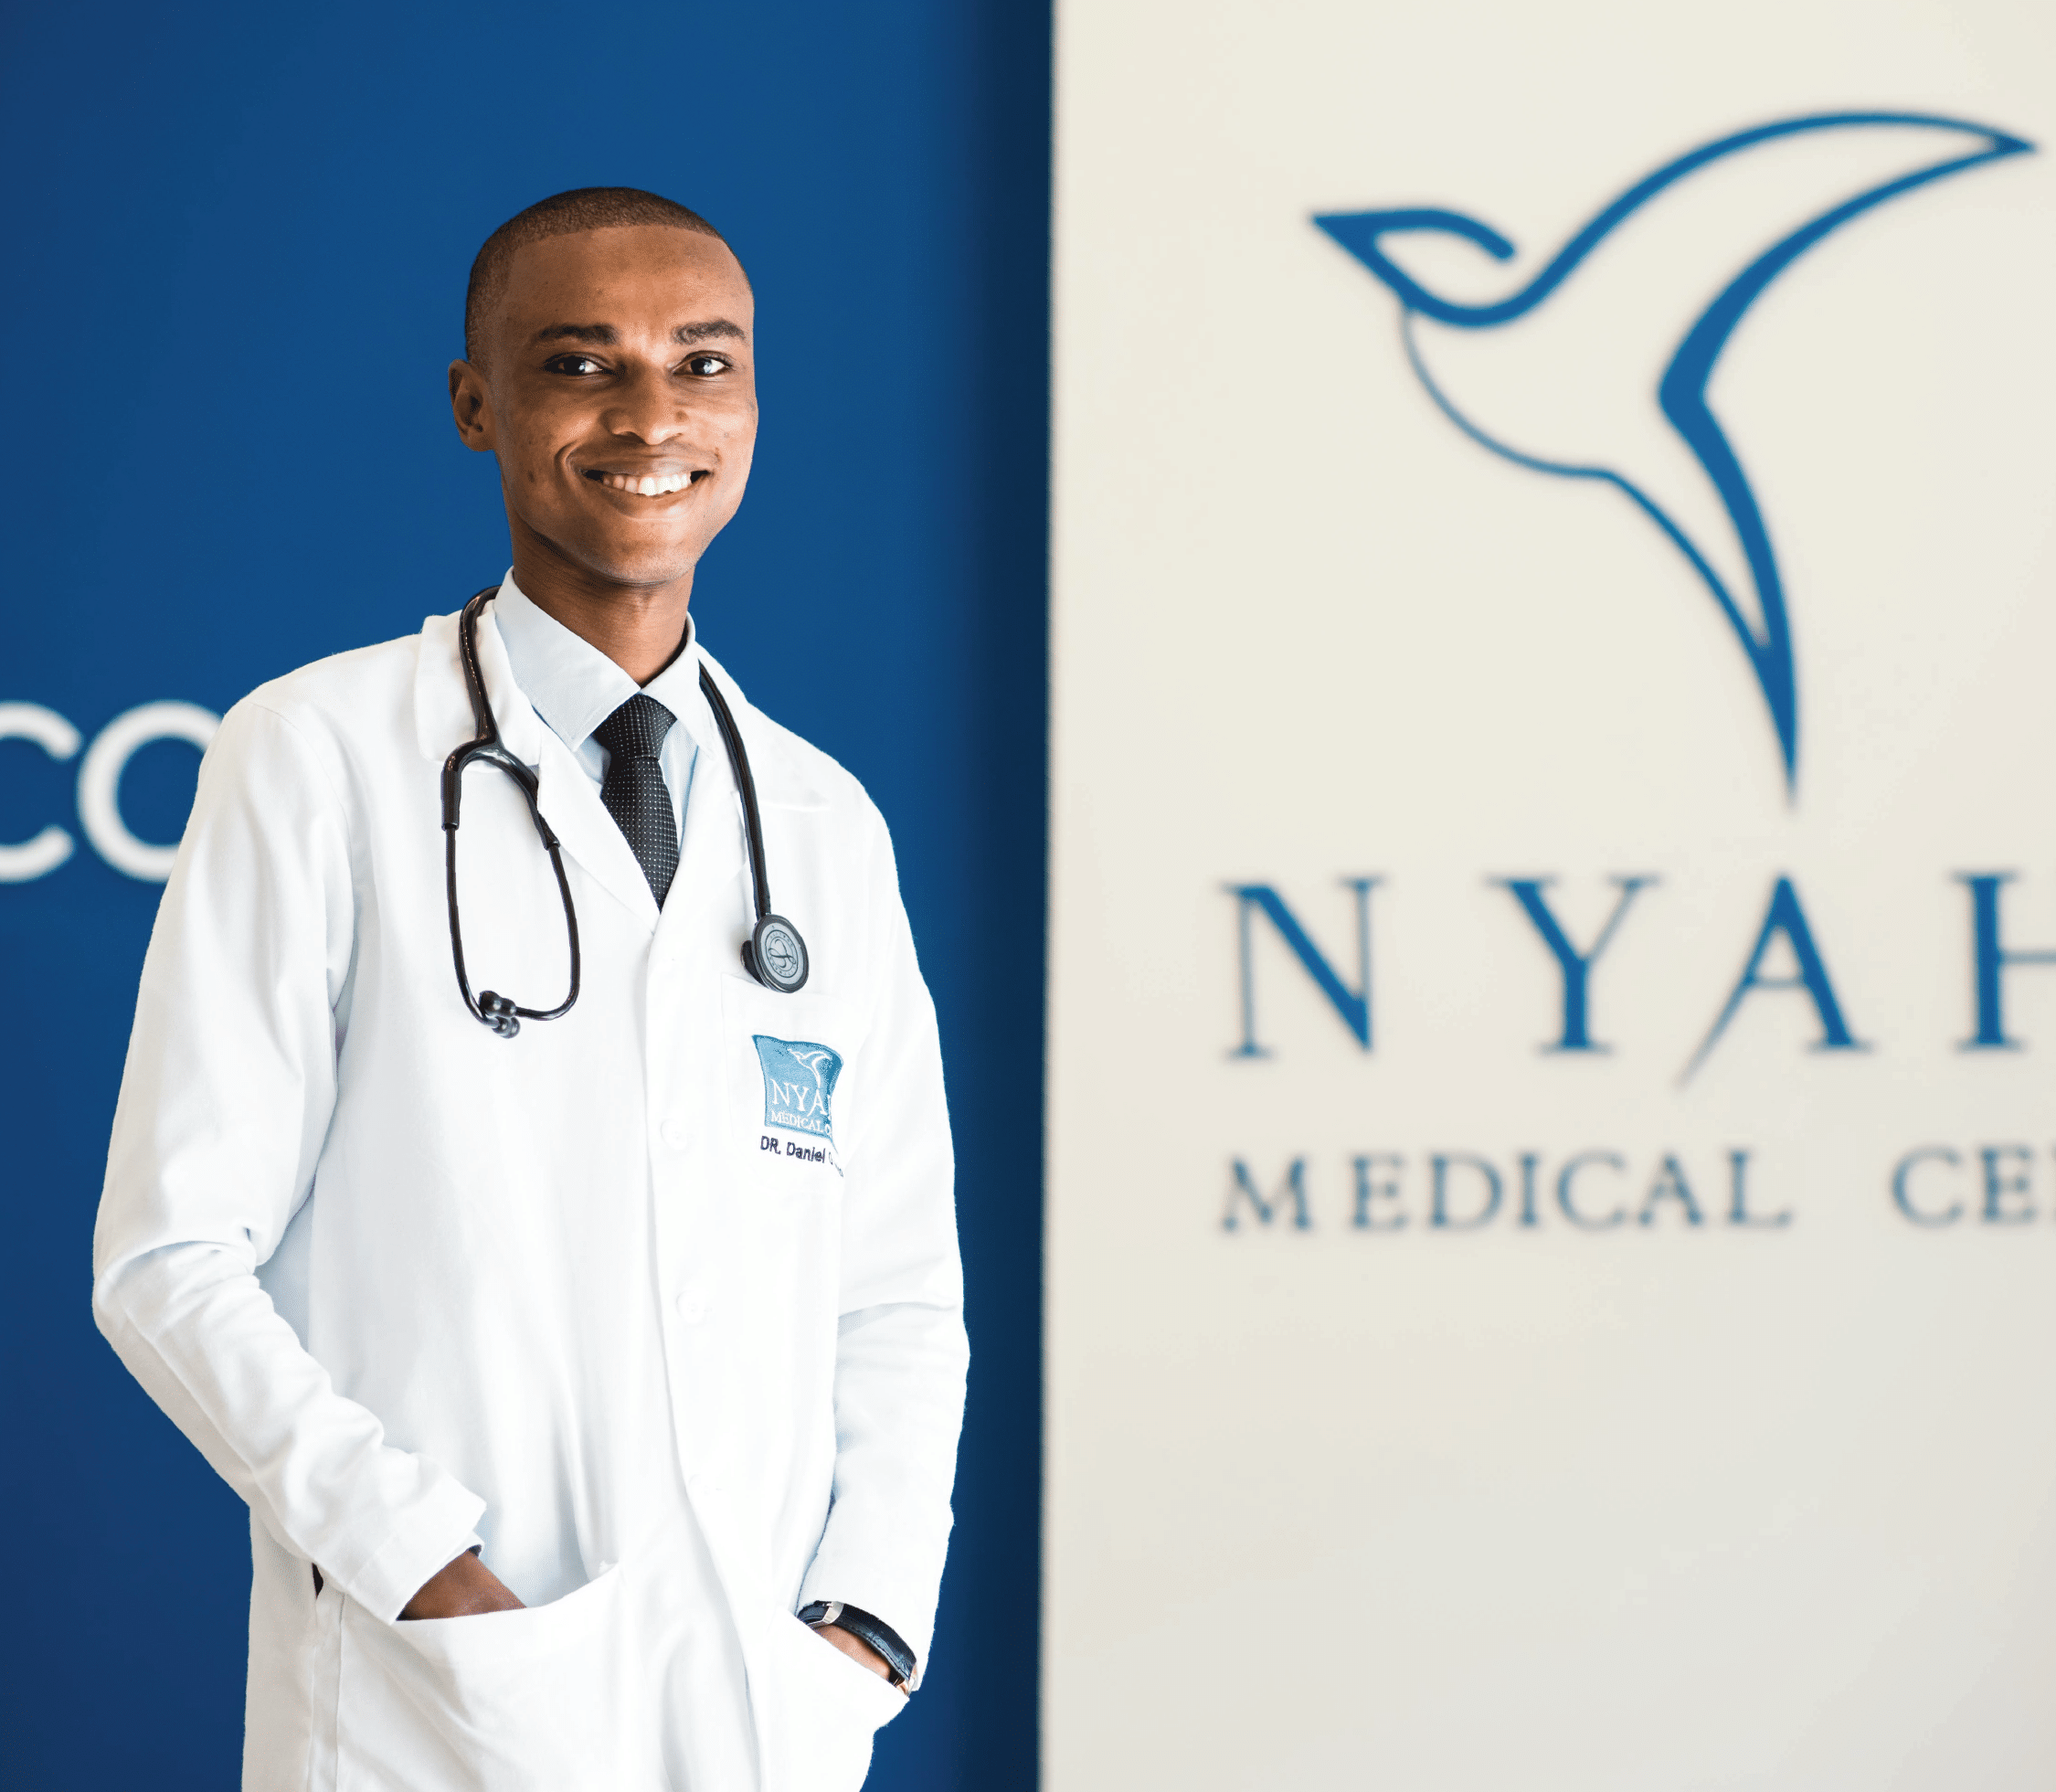 Nyaho Medical Cente